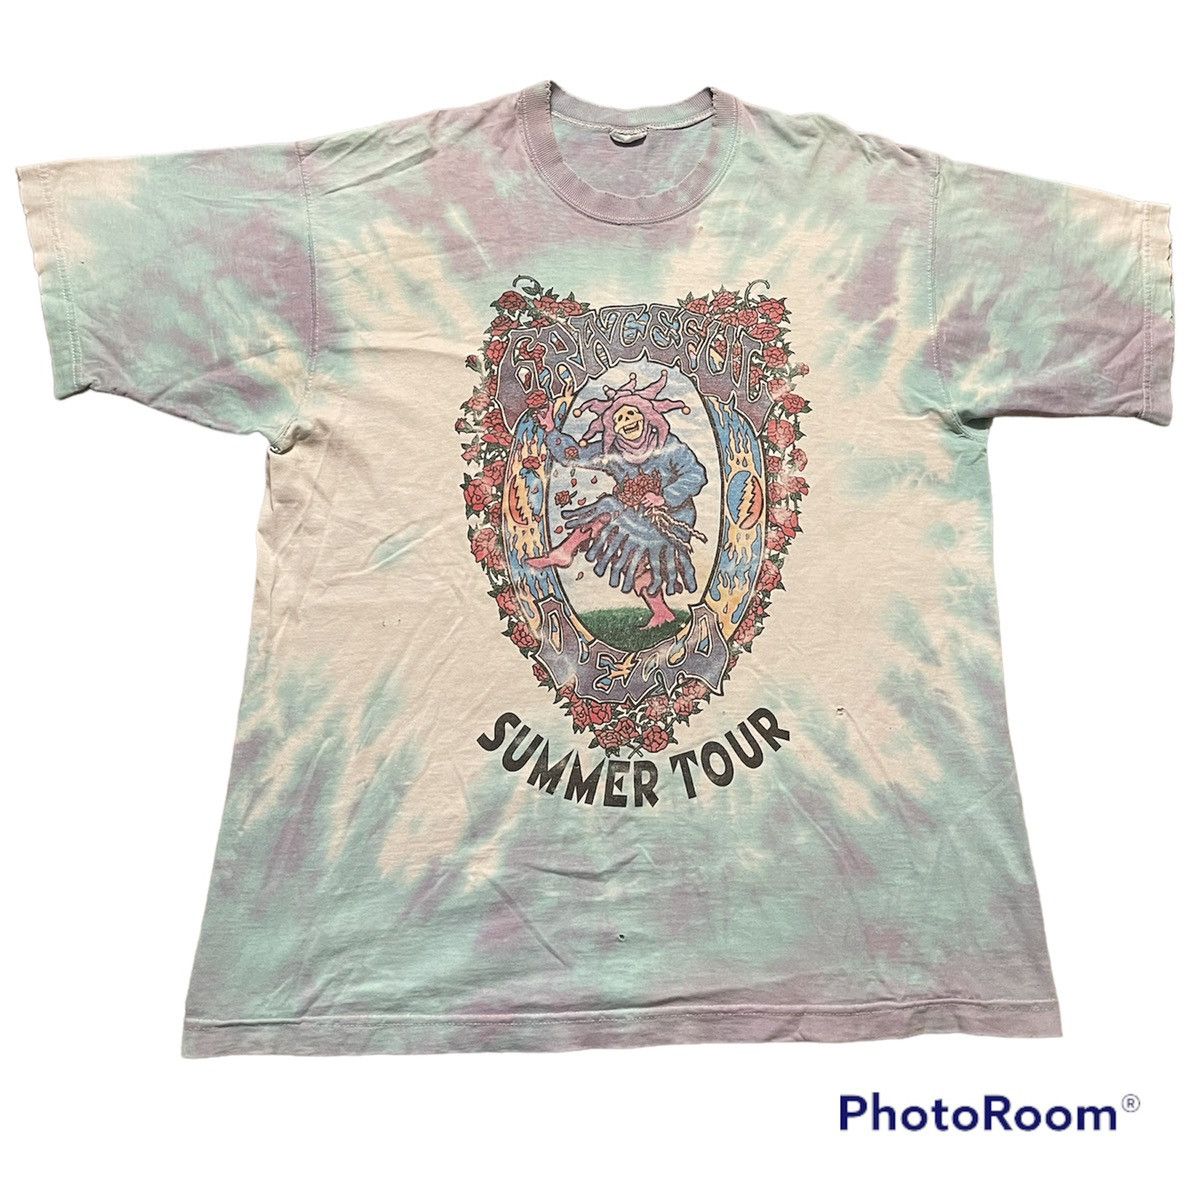 Vintage Vintage Grateful Dead Jester 1995 Summer Shirt XL Tour Jerry Size US XL / EU 56 / 4 - 1 Preview